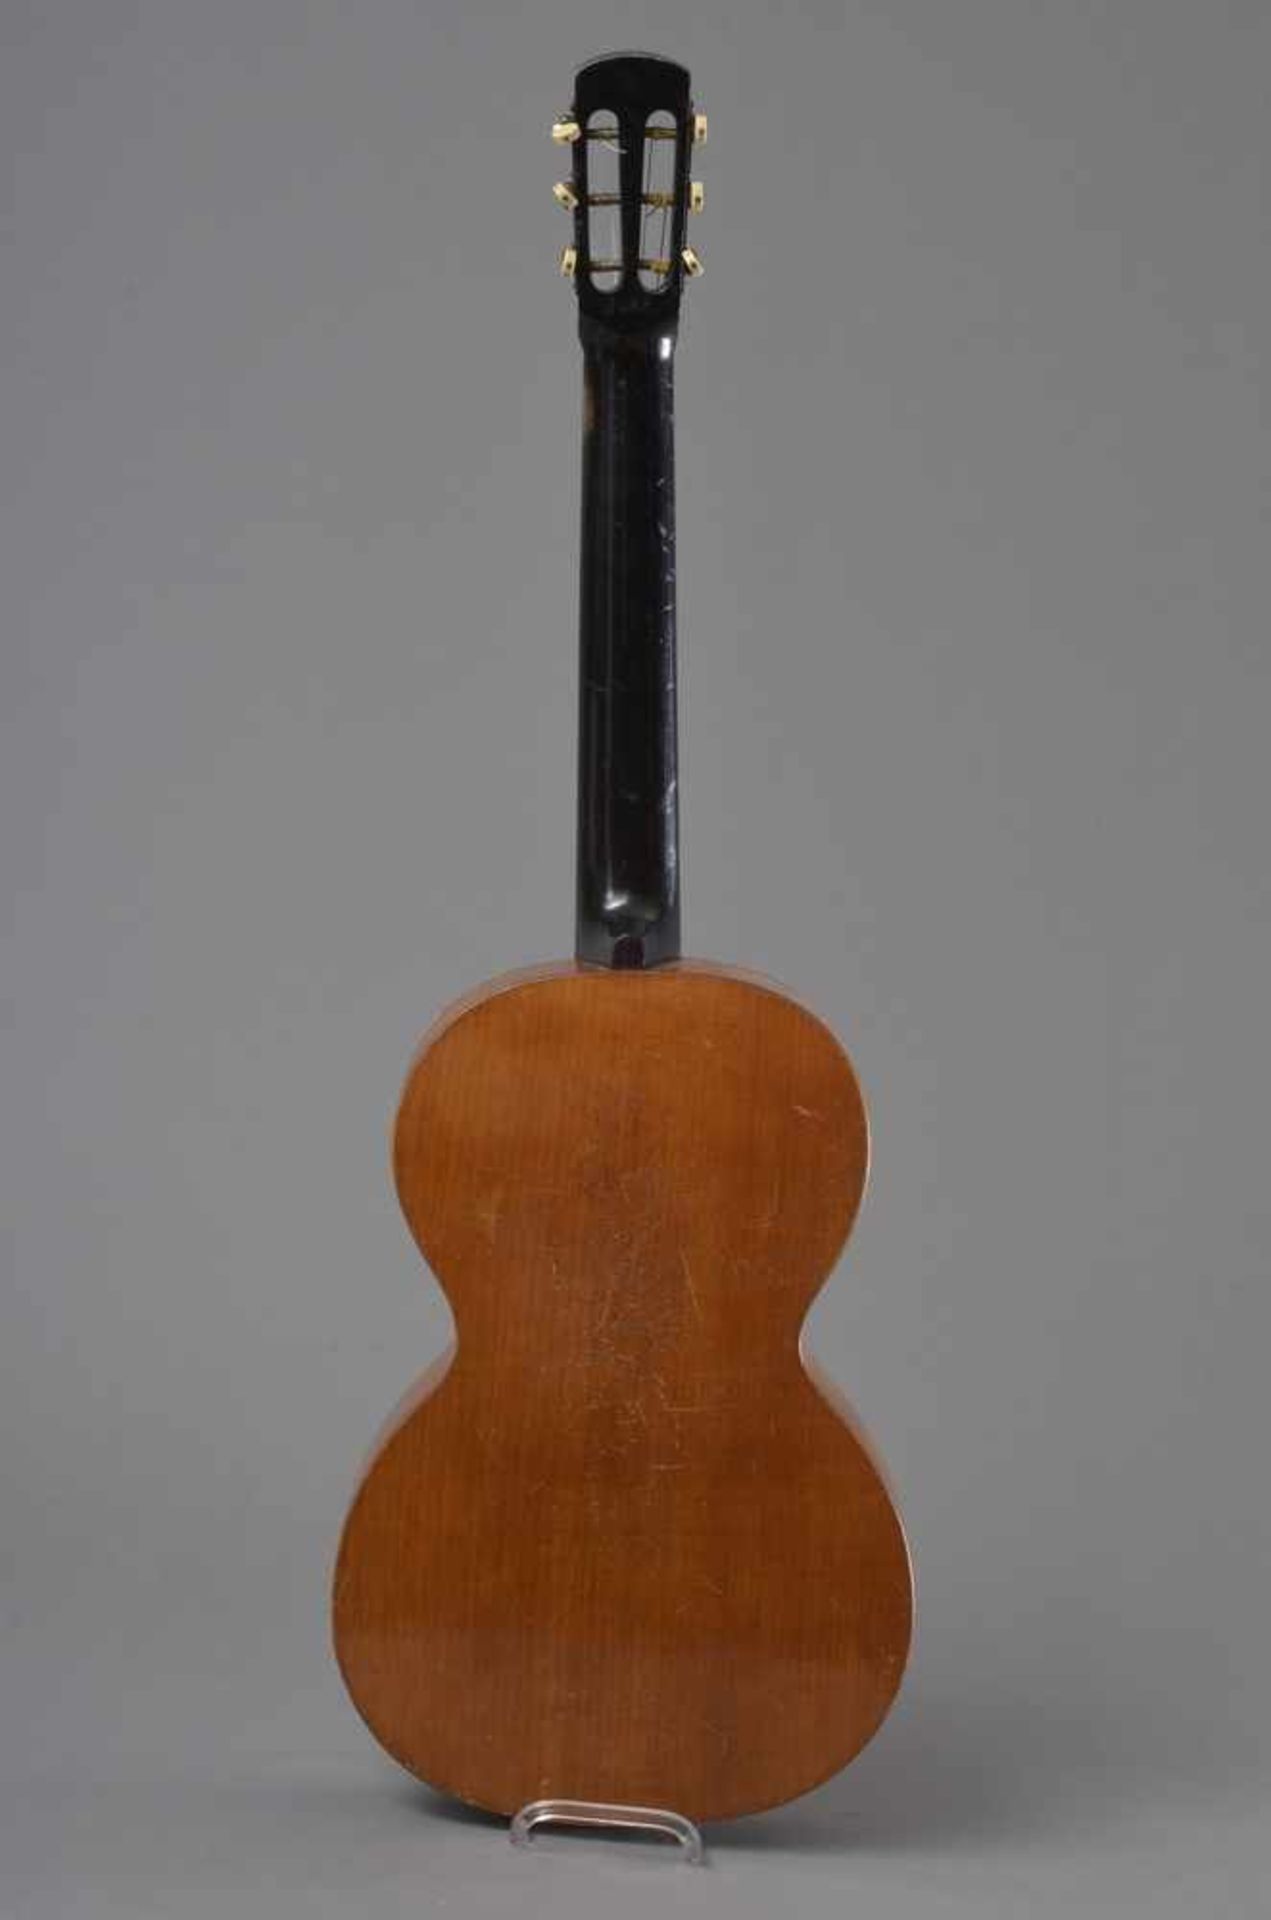 Historische Gitarre, Mensur 62cm, Gesamtlänge 93cm, Saitenhöhe 4-5mm, ca. 100 Jahre, spielbar - Image 2 of 8